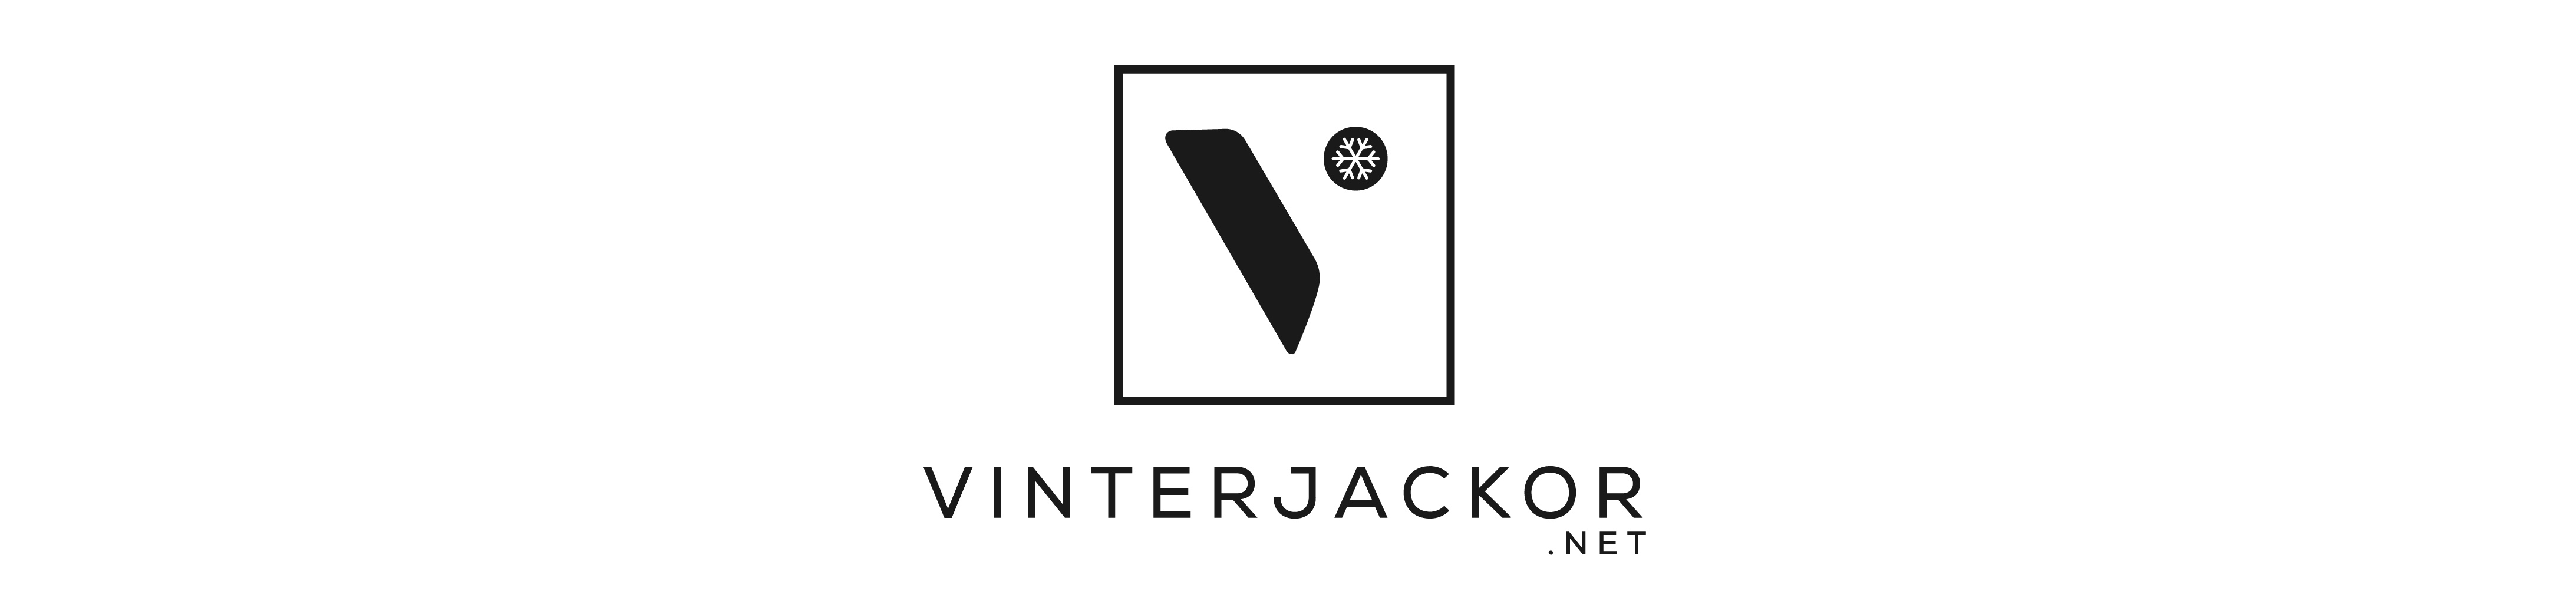 Vinterjackor logo